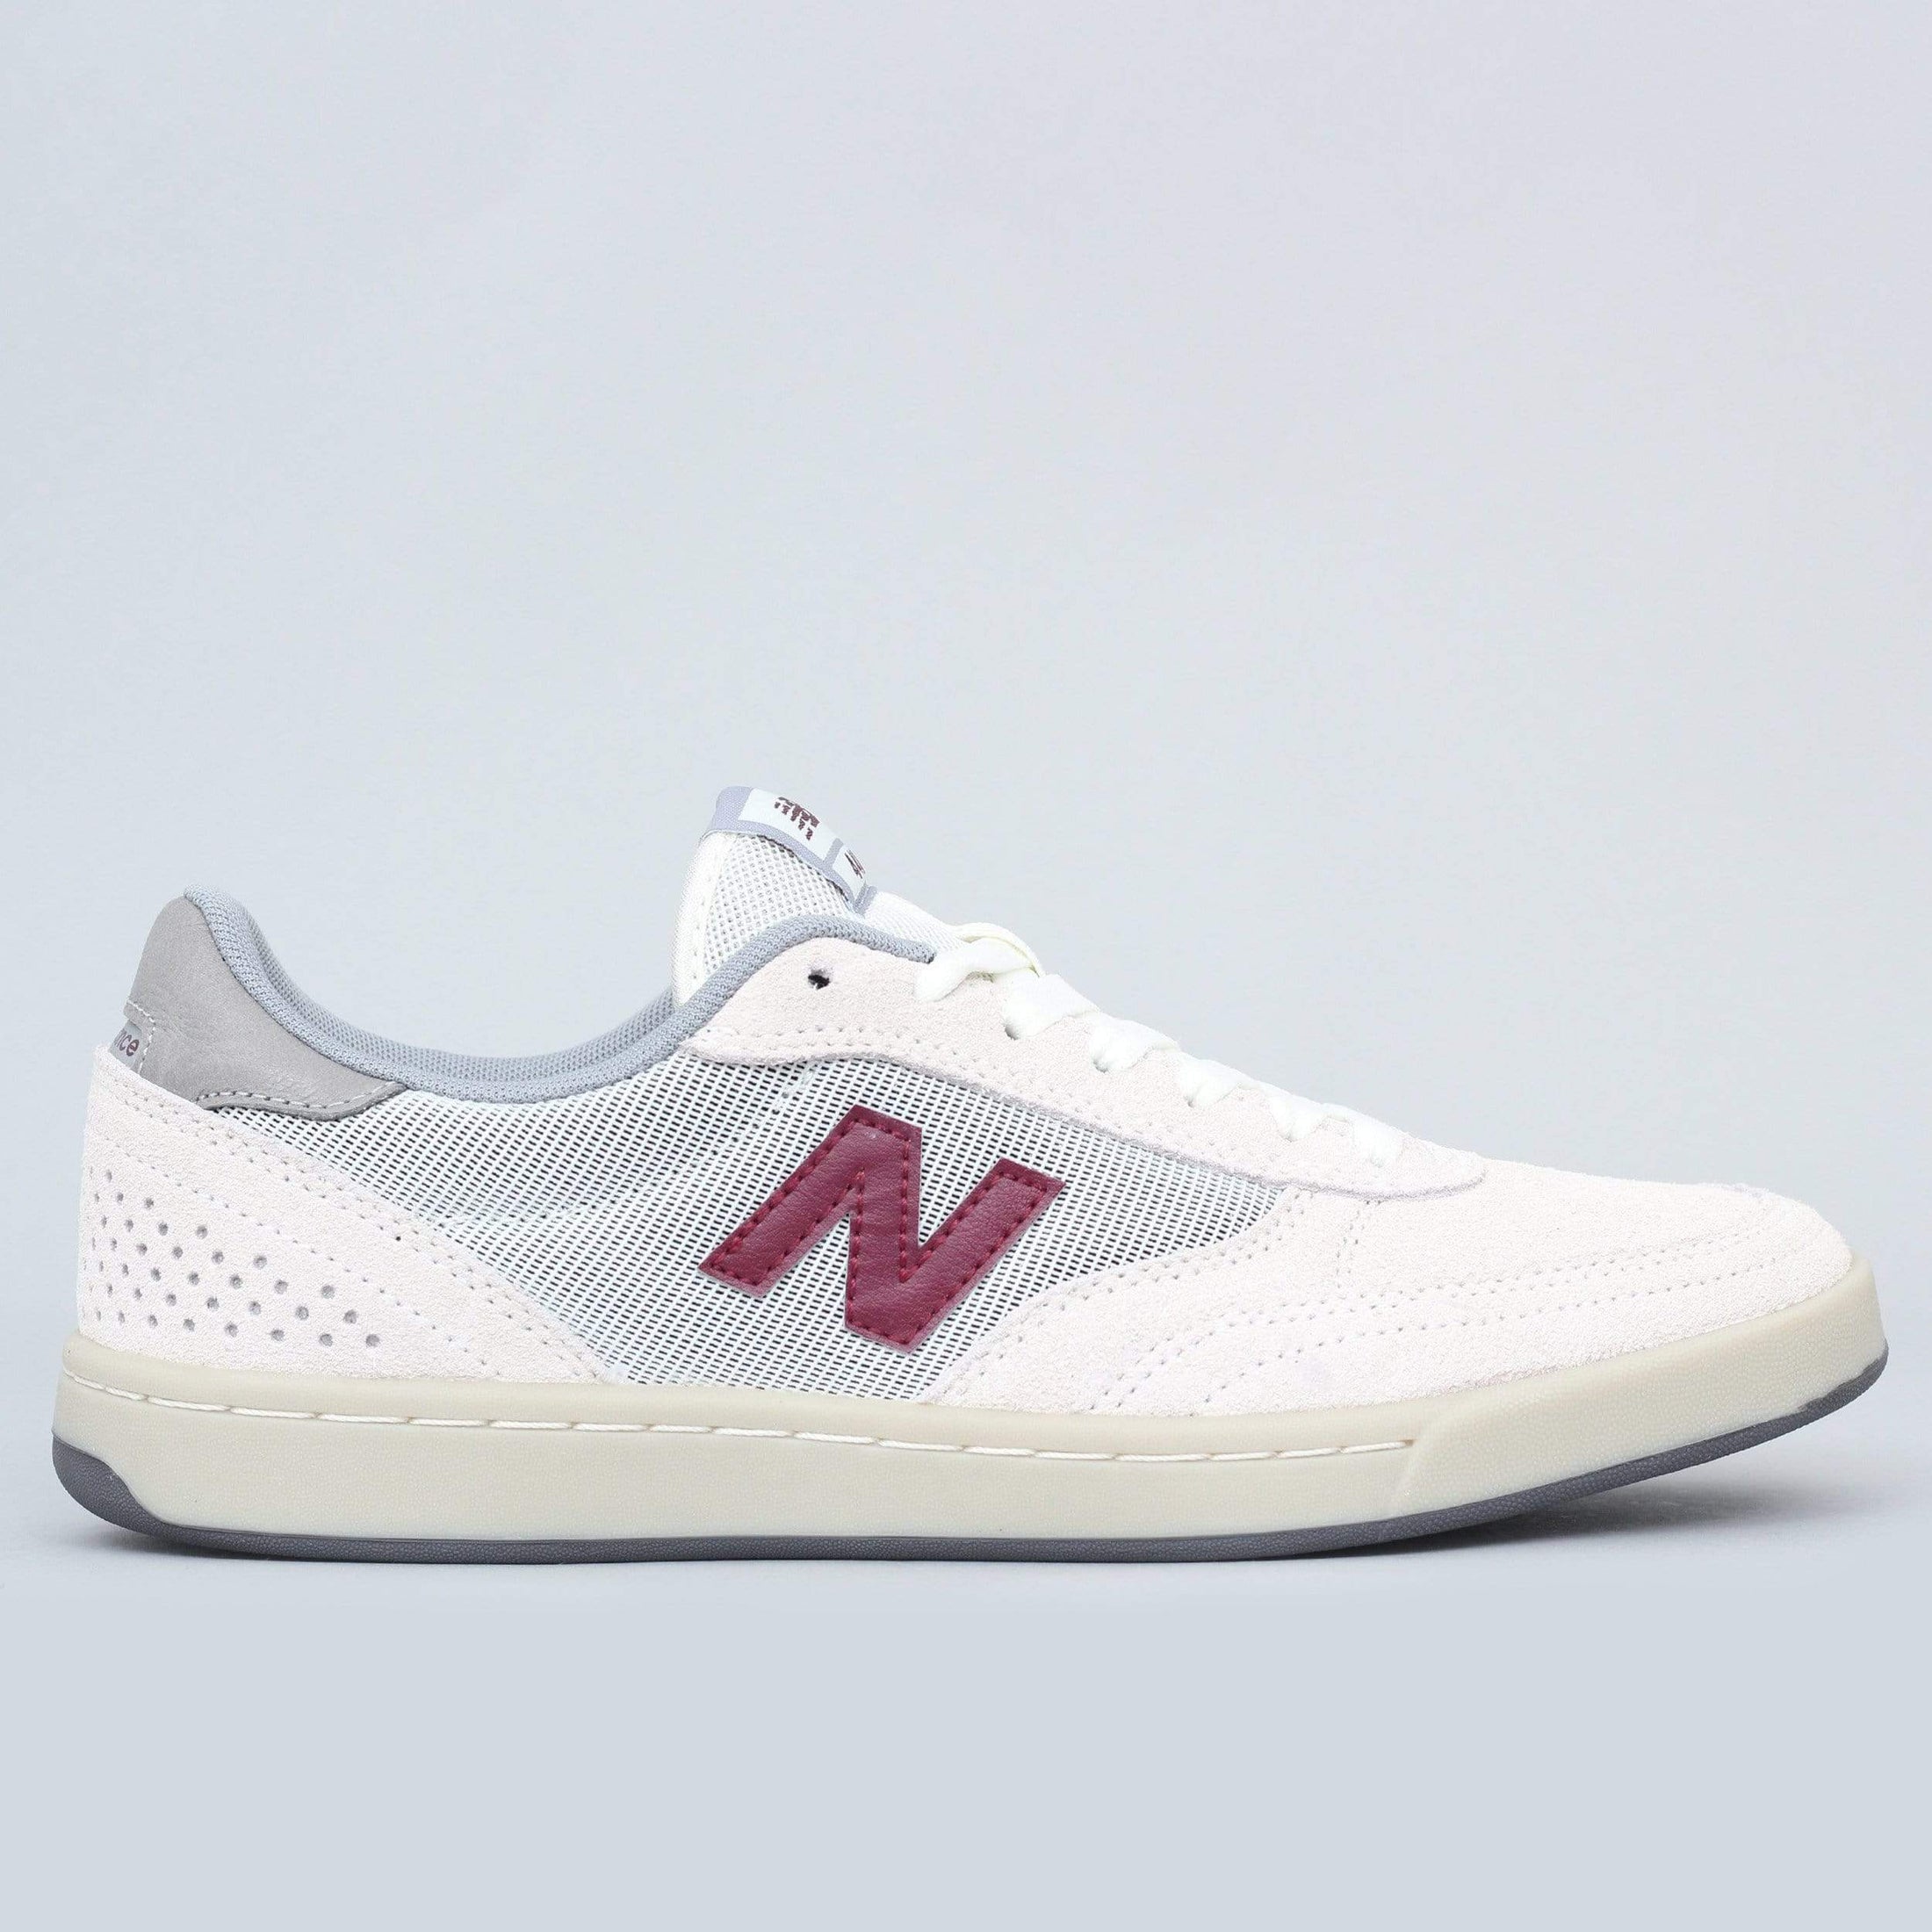 New Balance Numeric 440 Shoes White / Burgundy